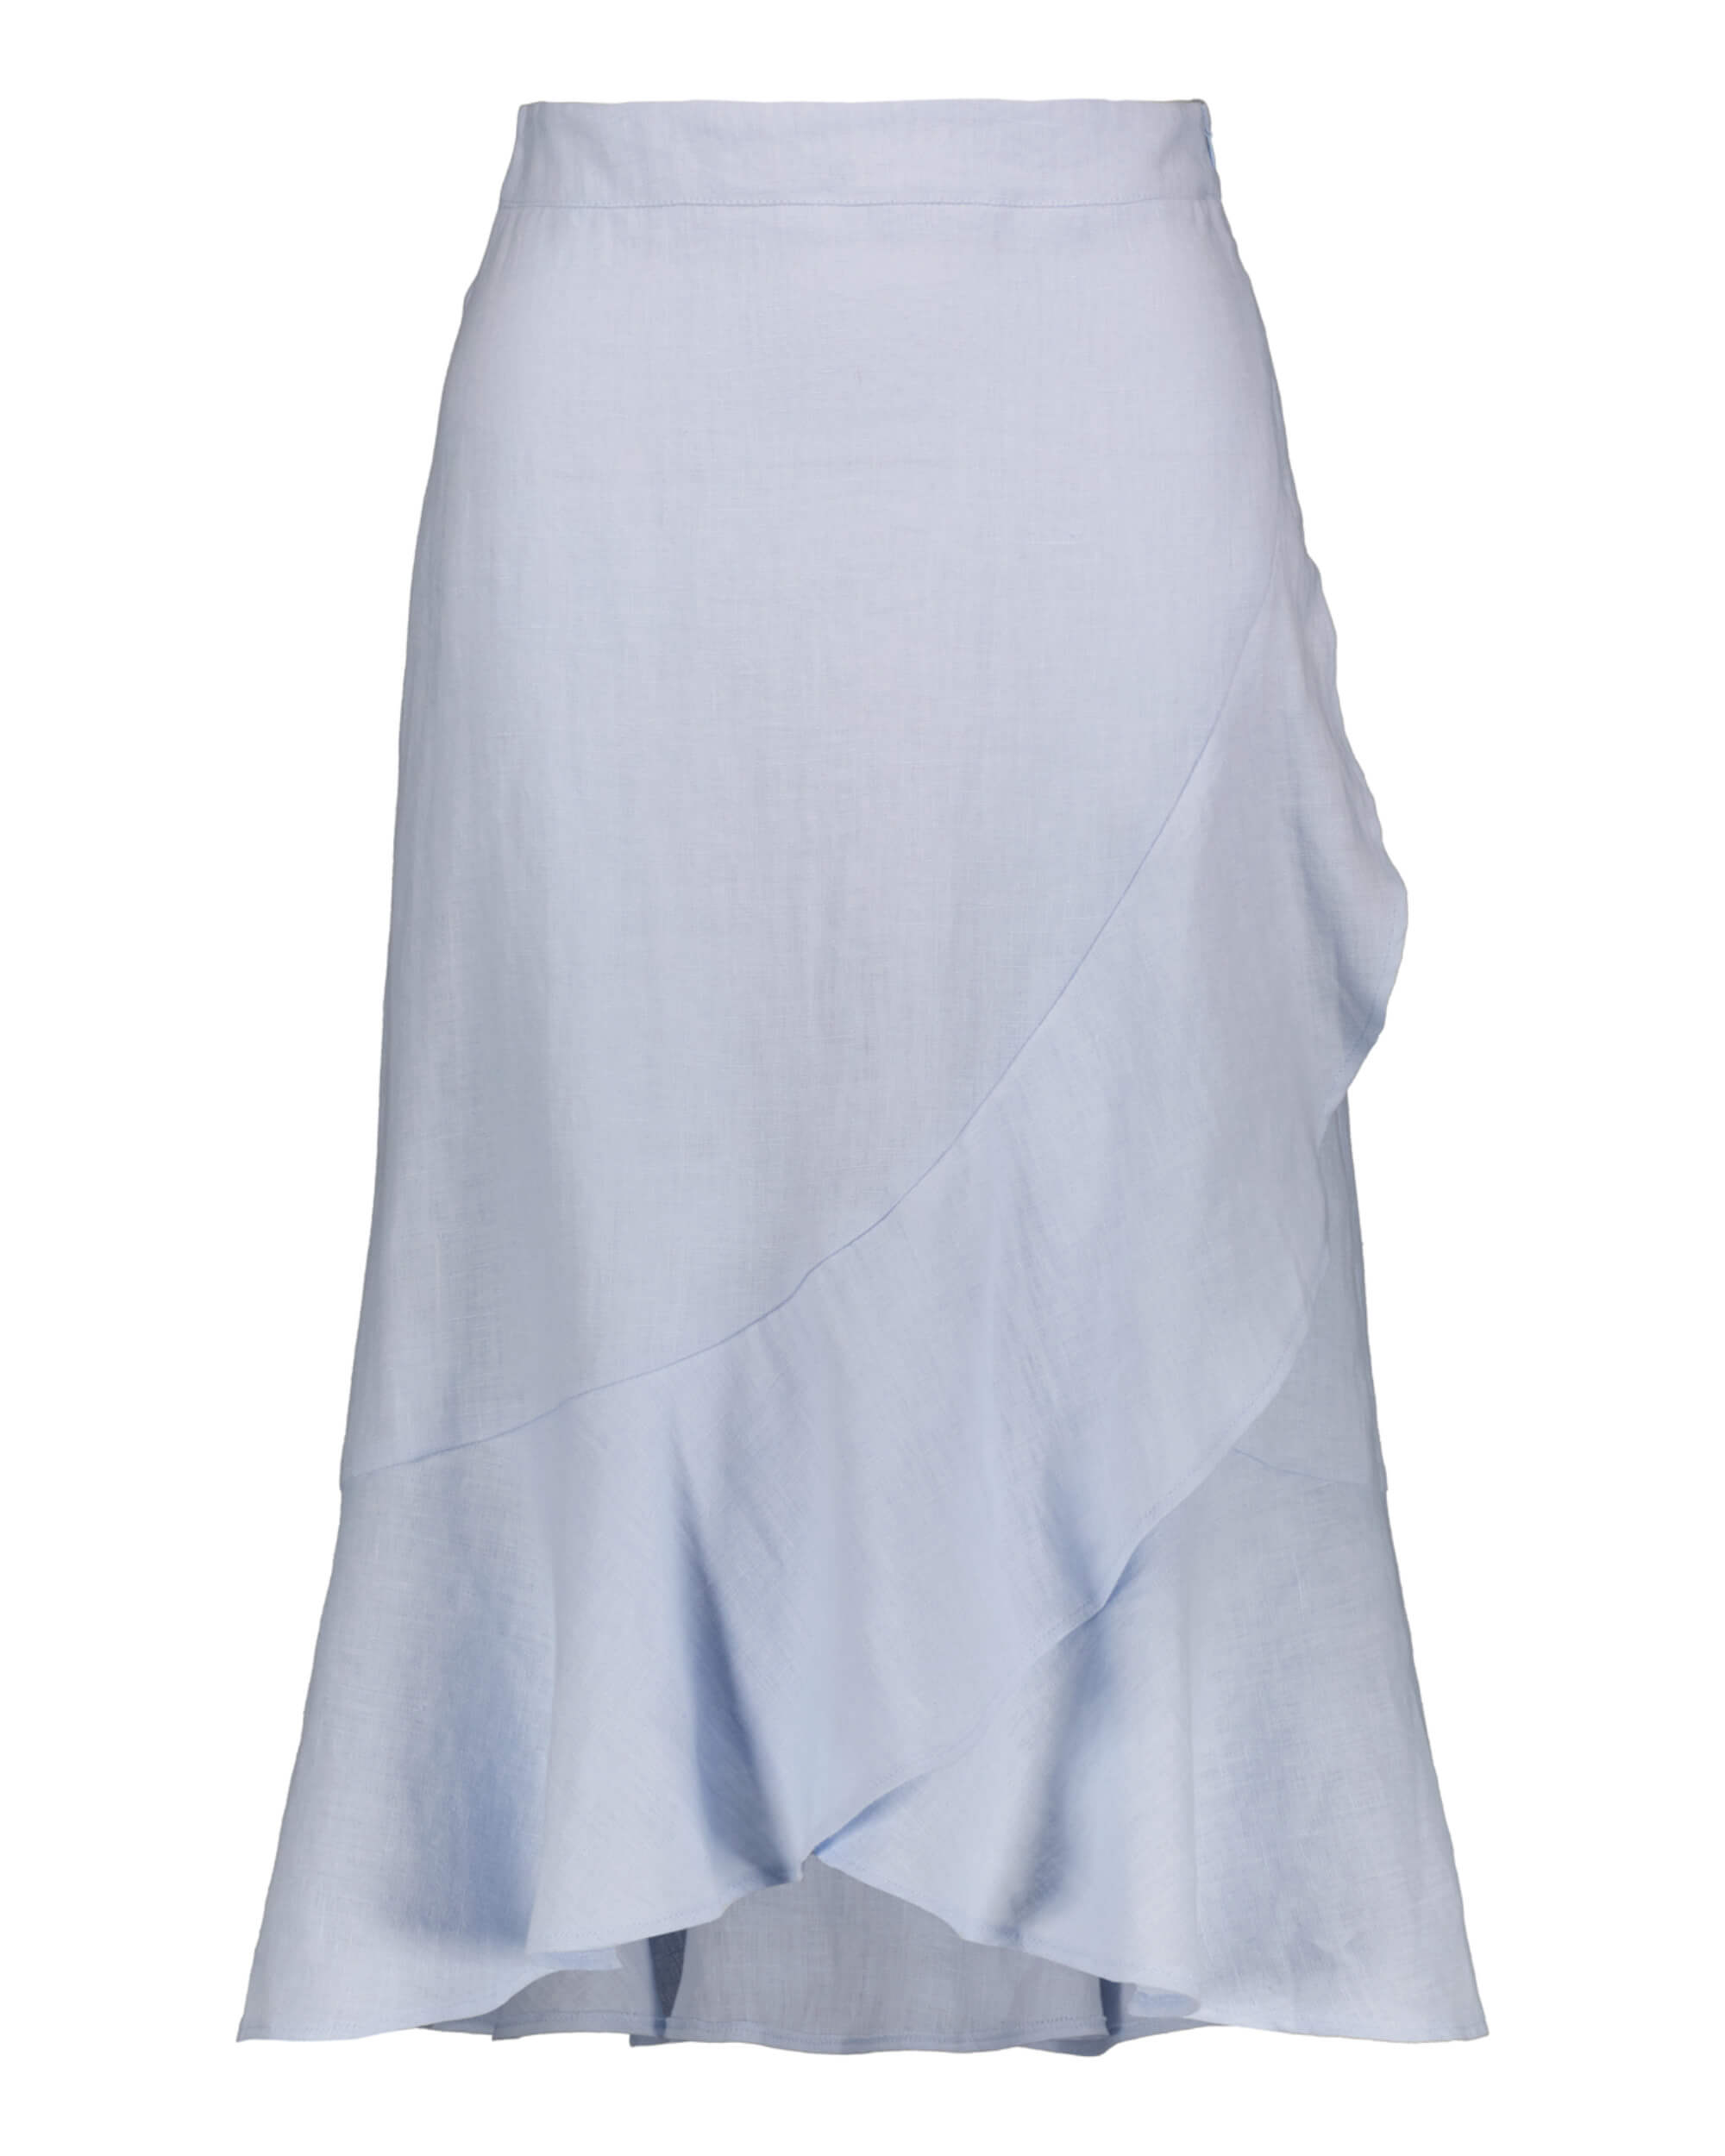 Pellava Ruffle Skirt, Sky Blue